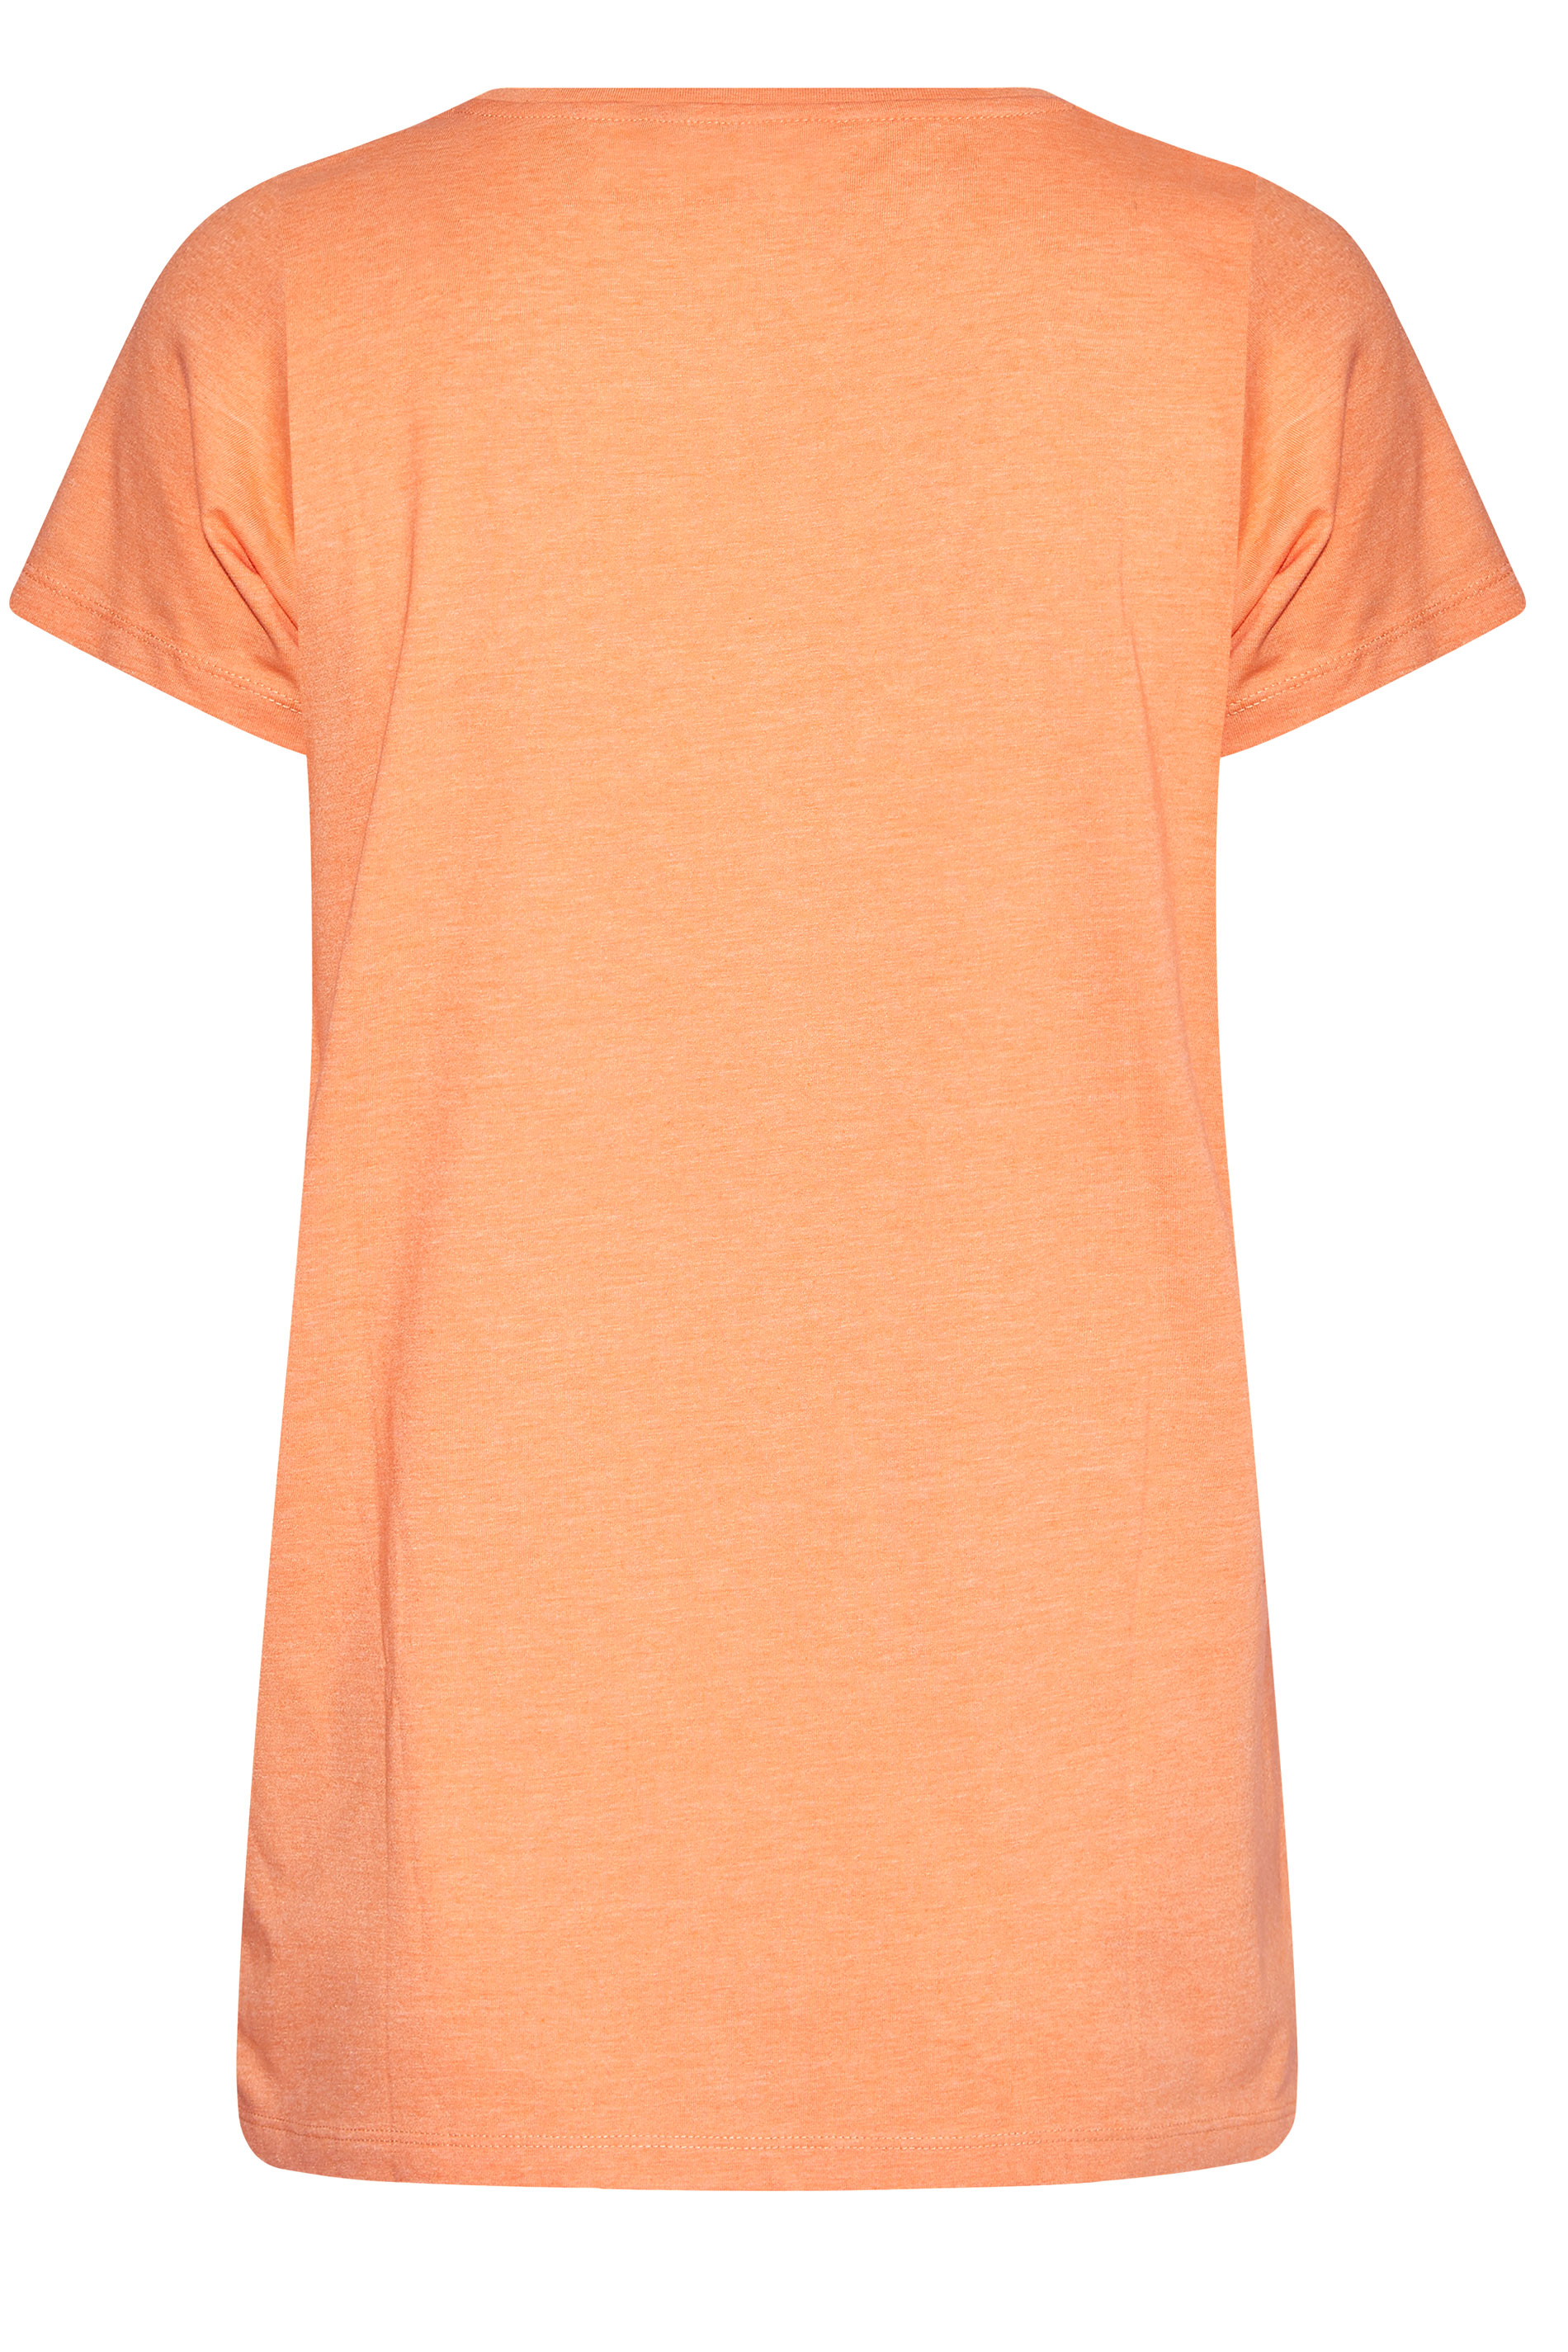 Grande taille  Tops Grande taille  T-Shirts Basiques & Débardeurs | T-Shirt Couleur Pêche en Jersey - PO78515